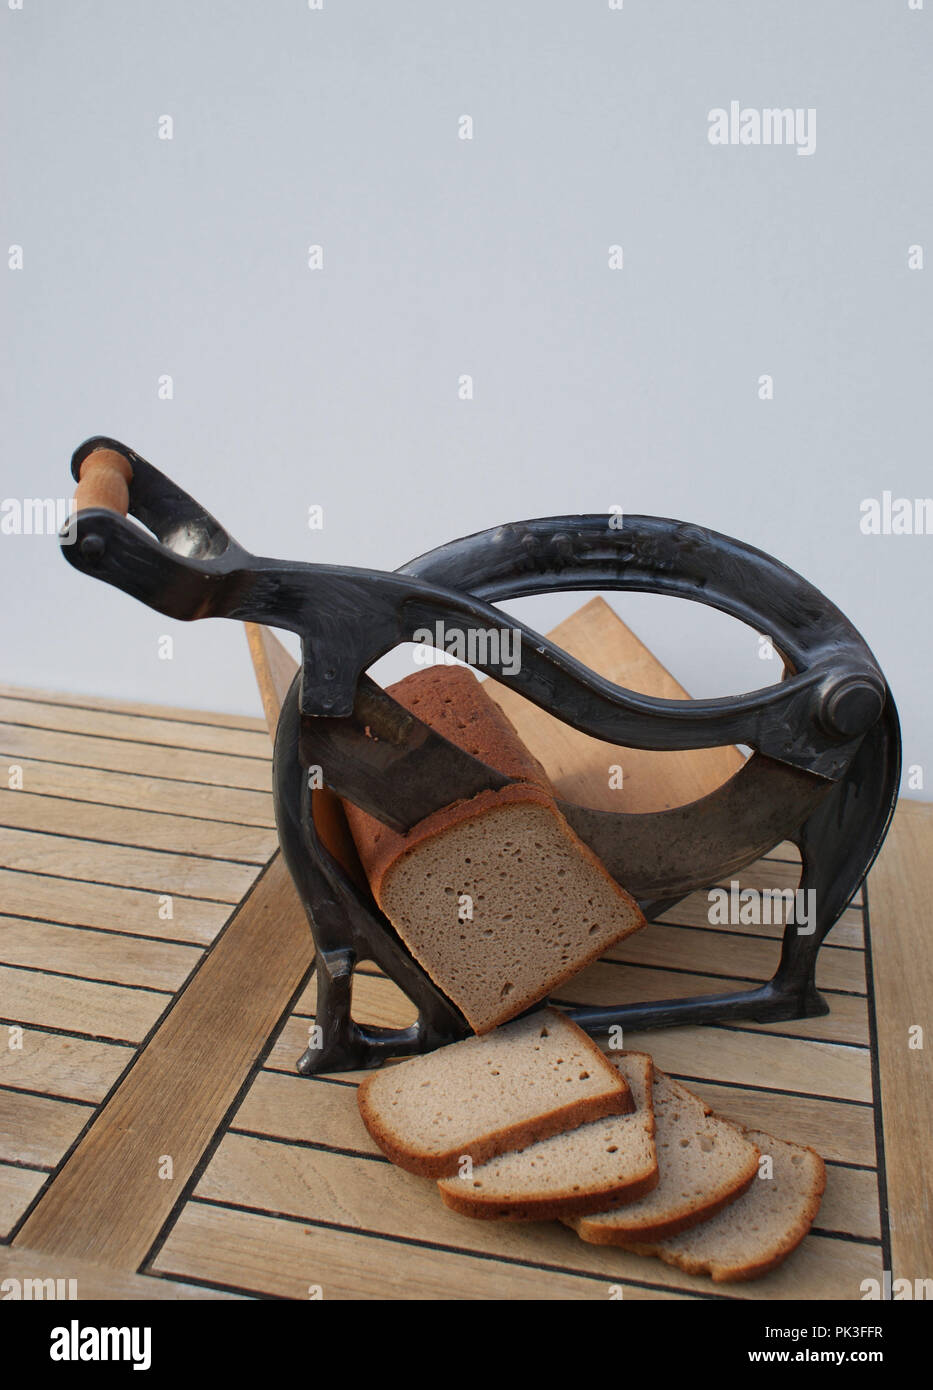 Vorderansicht eines nostalgischen Brotschneidemaschine mit Schneide Brot  Stockfotografie - Alamy